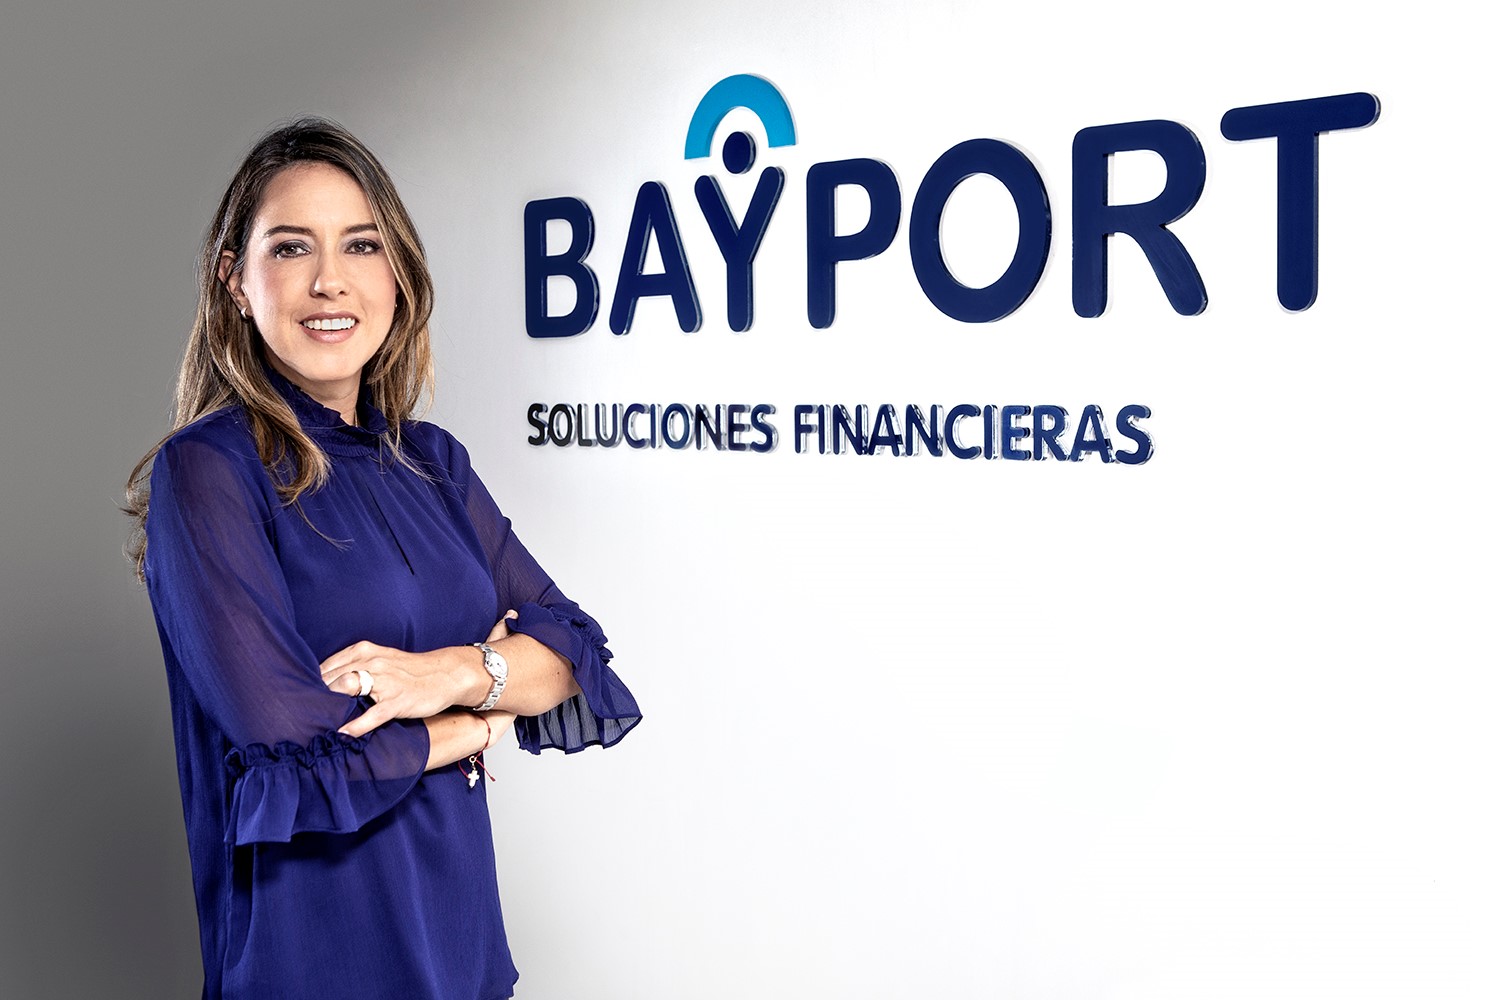 Bayport Colombia S.A. -Bayport Soluciones Financieras-